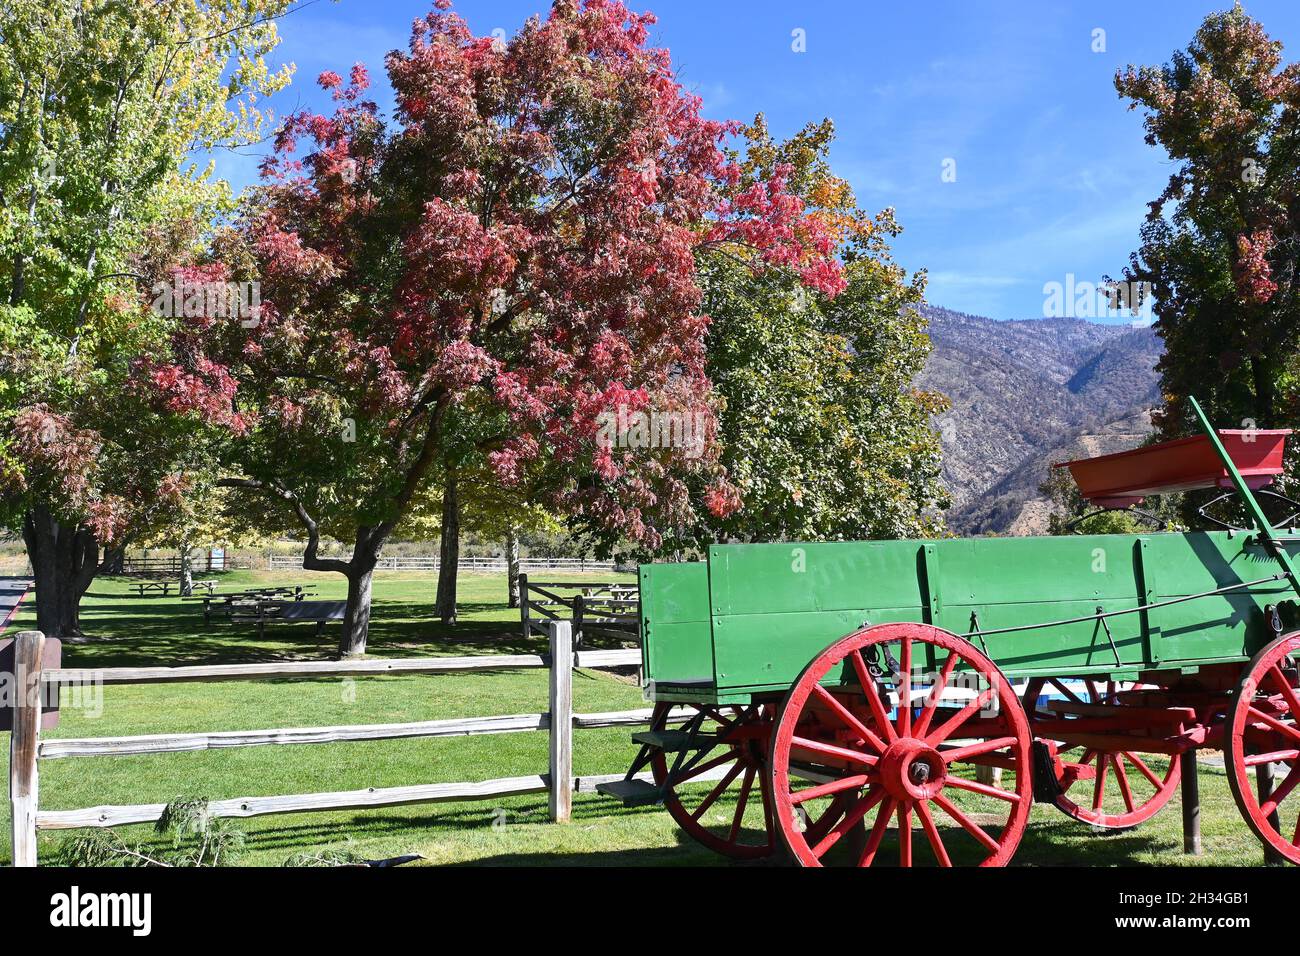 OAK GLEN, CALIFORNIE - 10 octobre 2021 : chariot coloré et feuillage d'automne à l'entrée de Los Rios Rancho, la plus grande ferme Apple de Californie du Sud. Banque D'Images